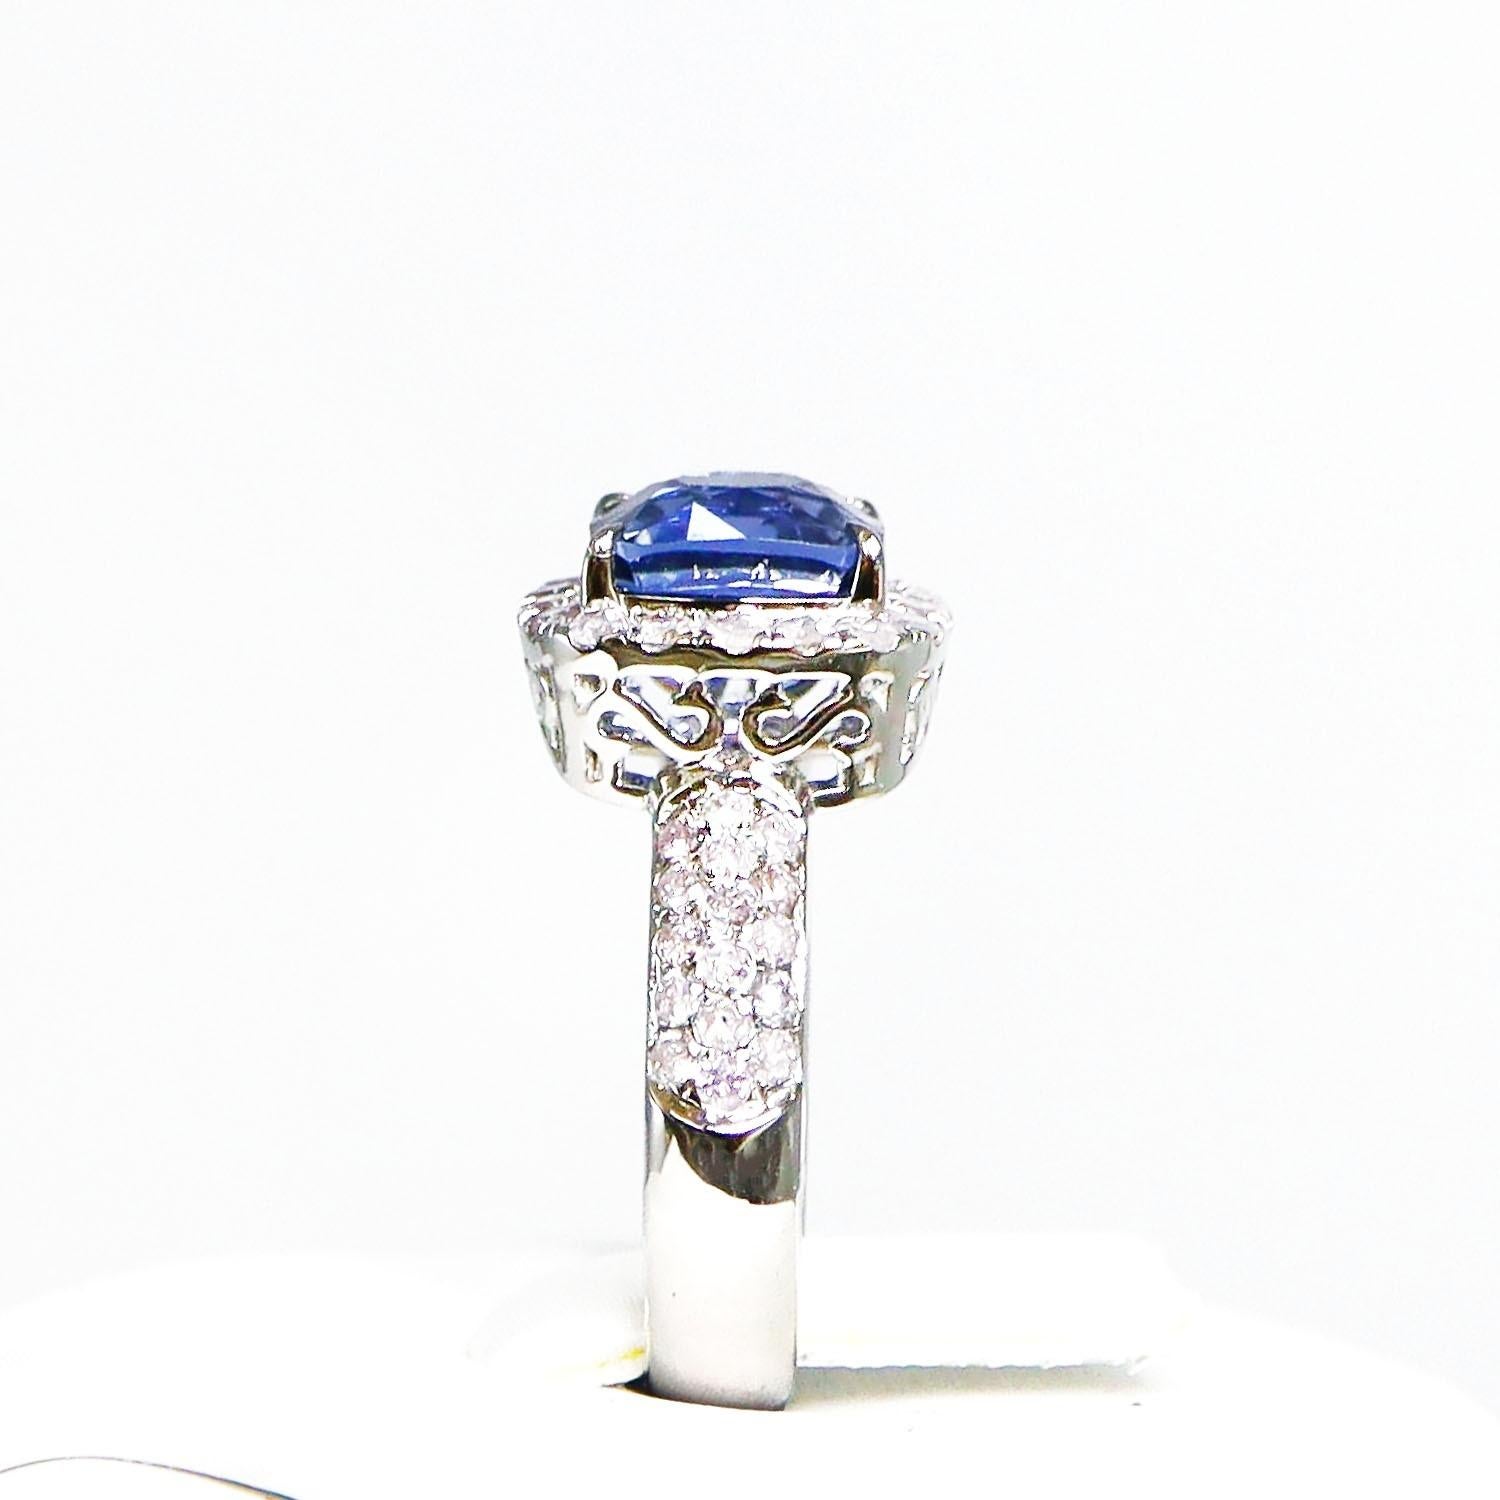 IGI 14K 2.55 Ct Color Change Blue Spinel&Pink Diamonds Antique Engagement Ring For Sale 1